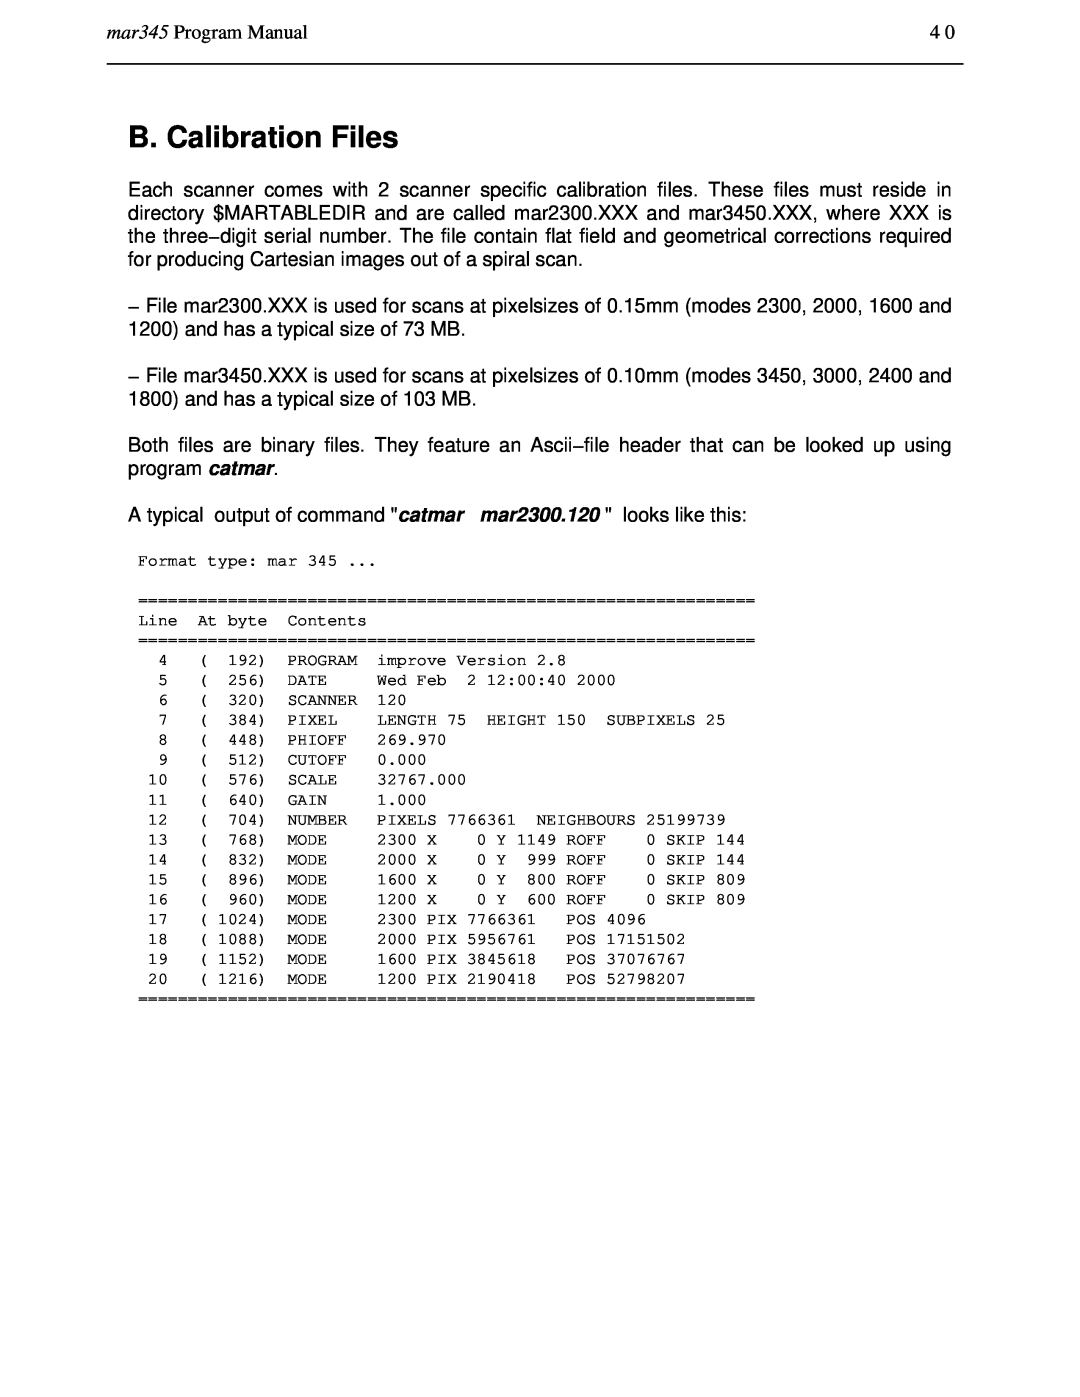 Compaq manual B. Calibration Files, mar345 Program Manual 